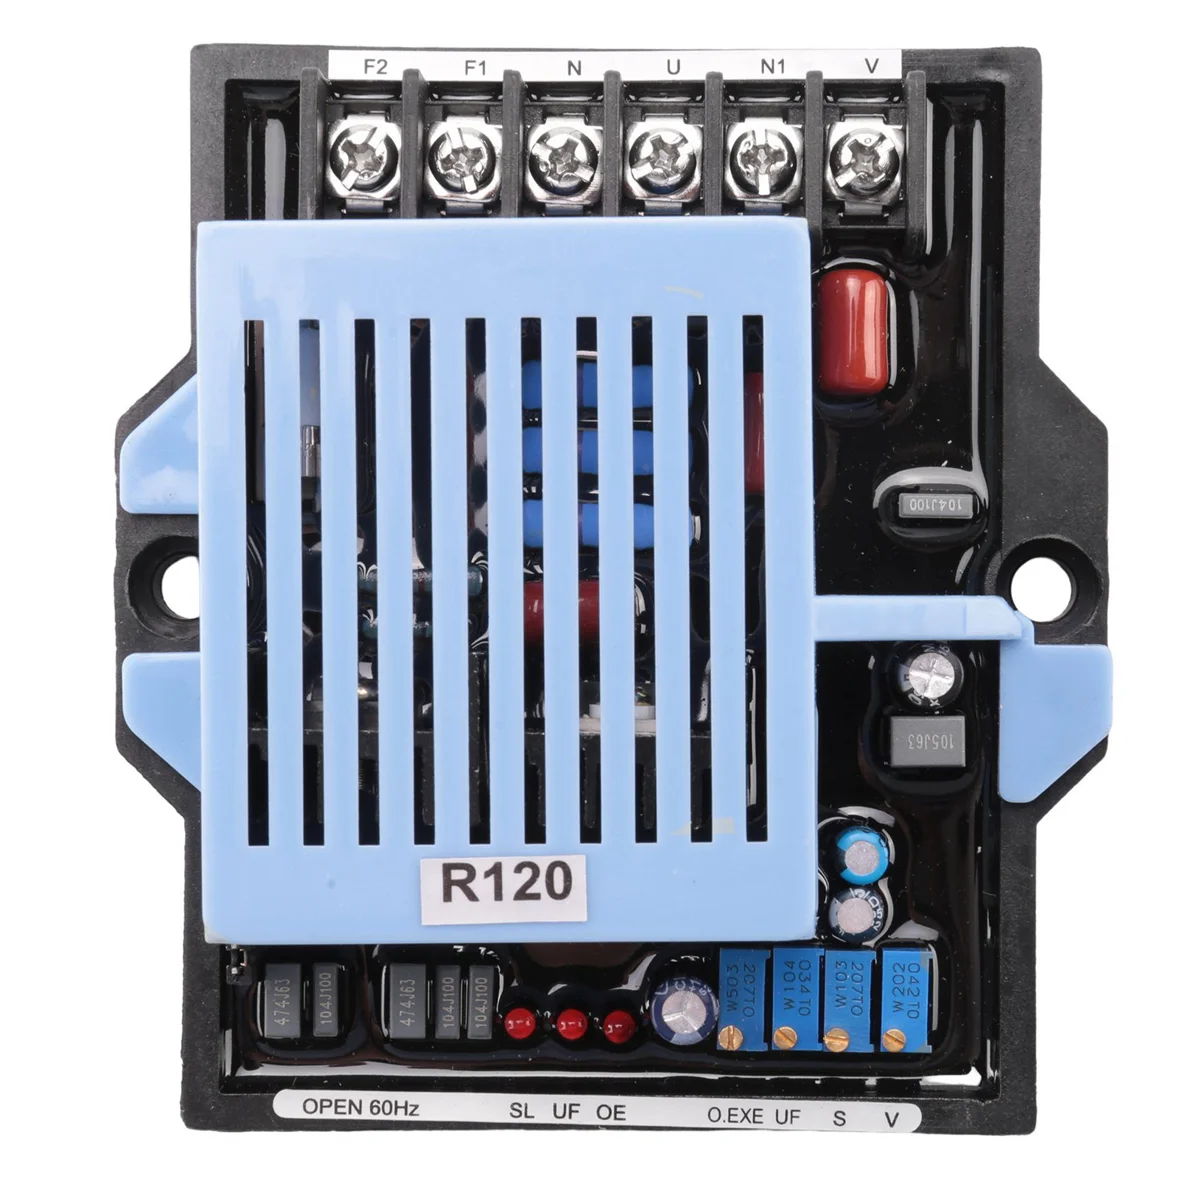 

Новый автоматический регулятор напряжения R120 для генератора AVR, генератор переменного тока, стабилизатор мощности для дизельного генератора